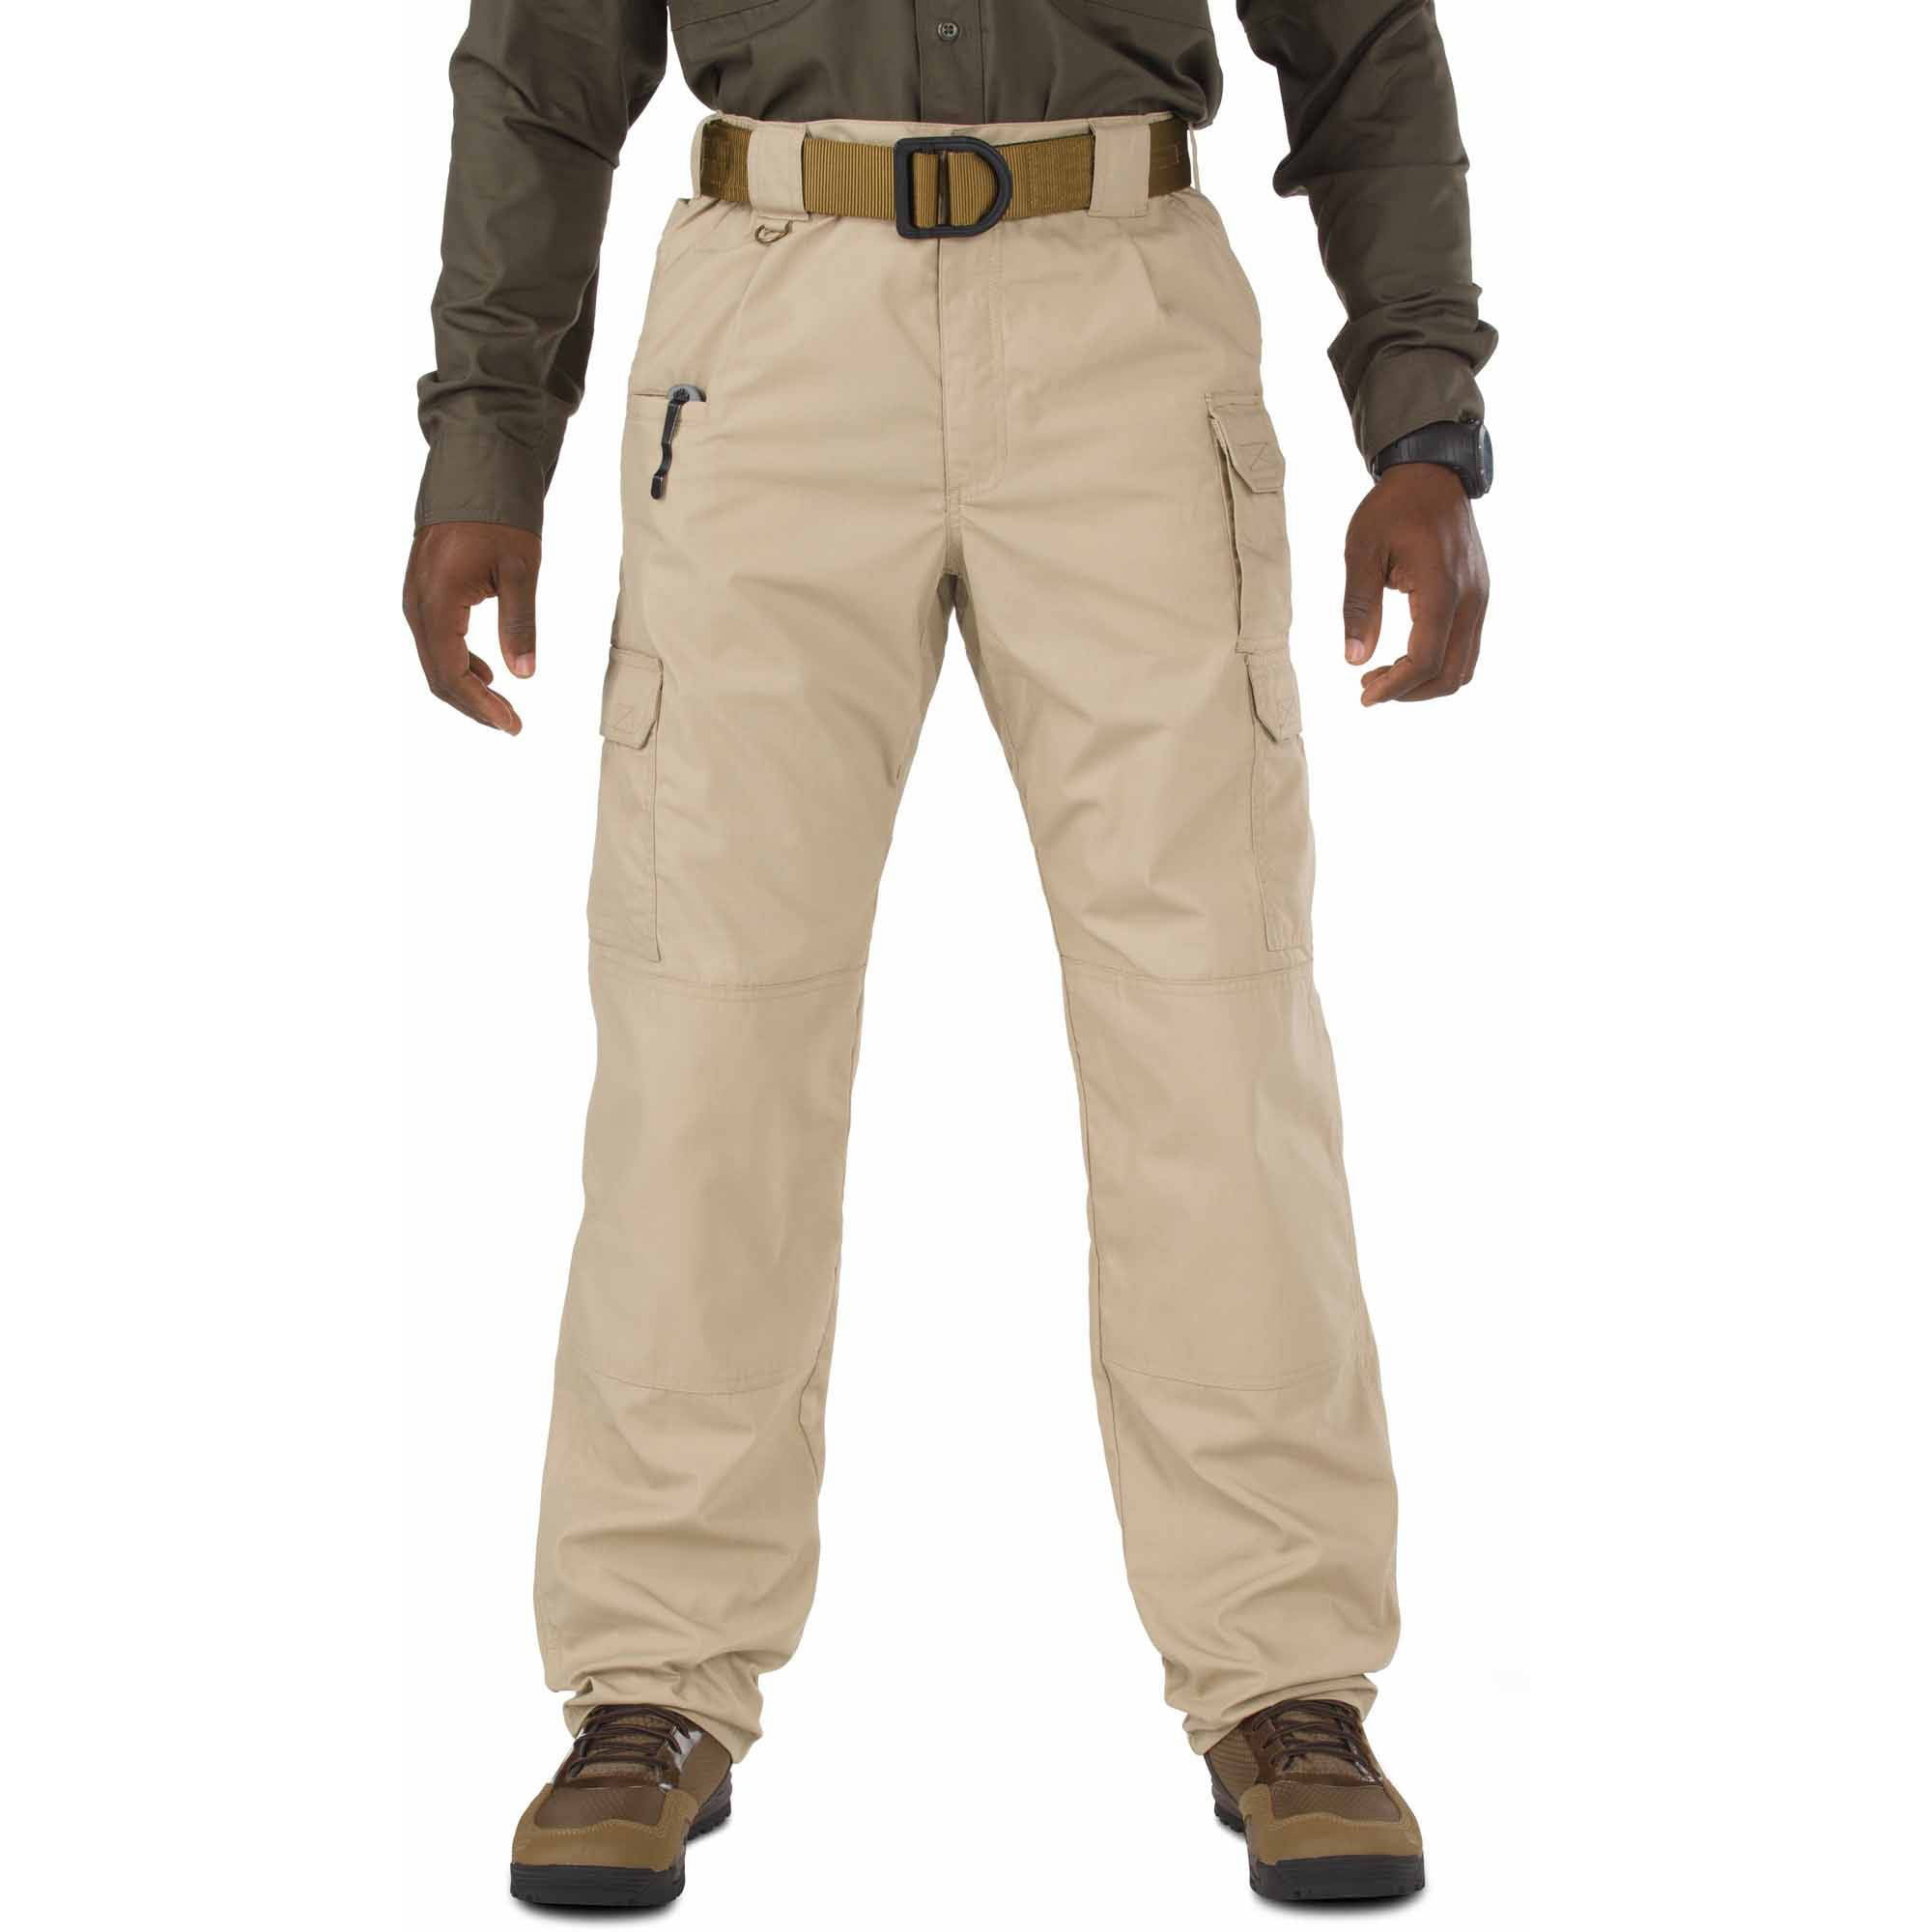 5.11 Tactical Men's Taclite Pro Pants 74273, TDU Khaki - Walmart.com